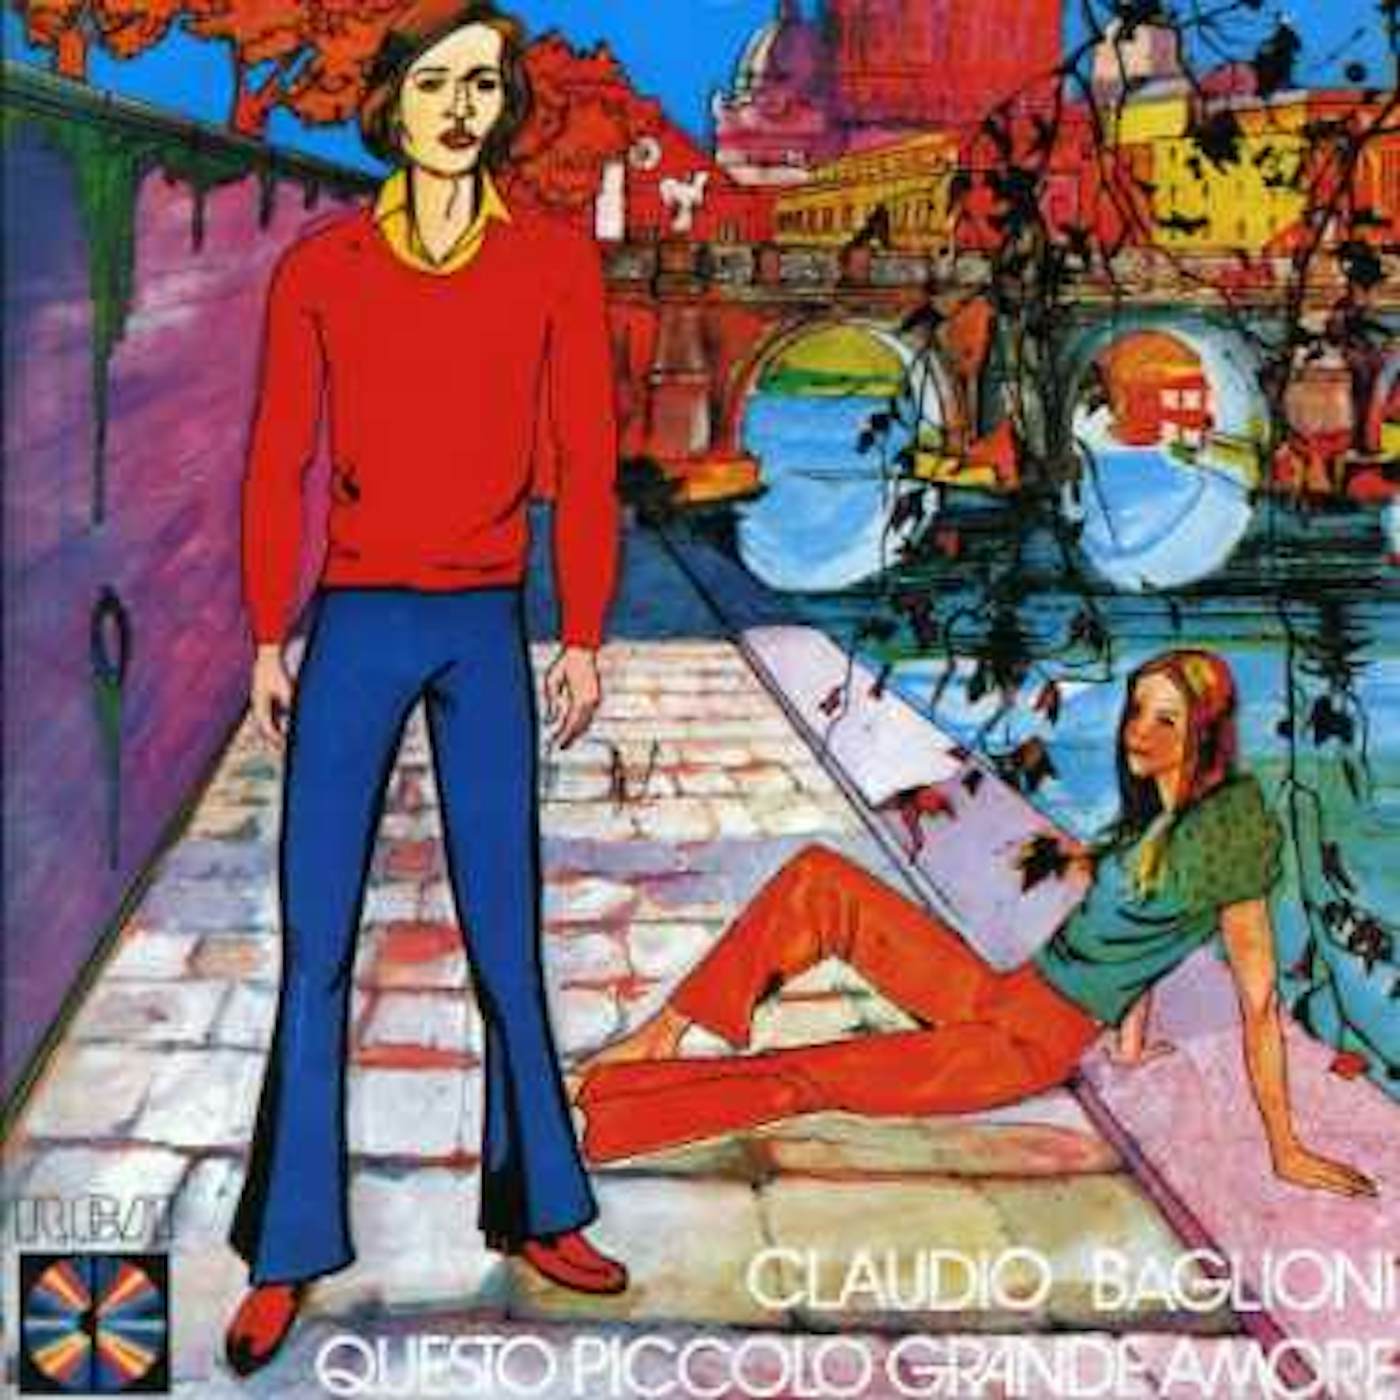 Claudio Baglioni QUESTO PICCOLO GRANDE CD